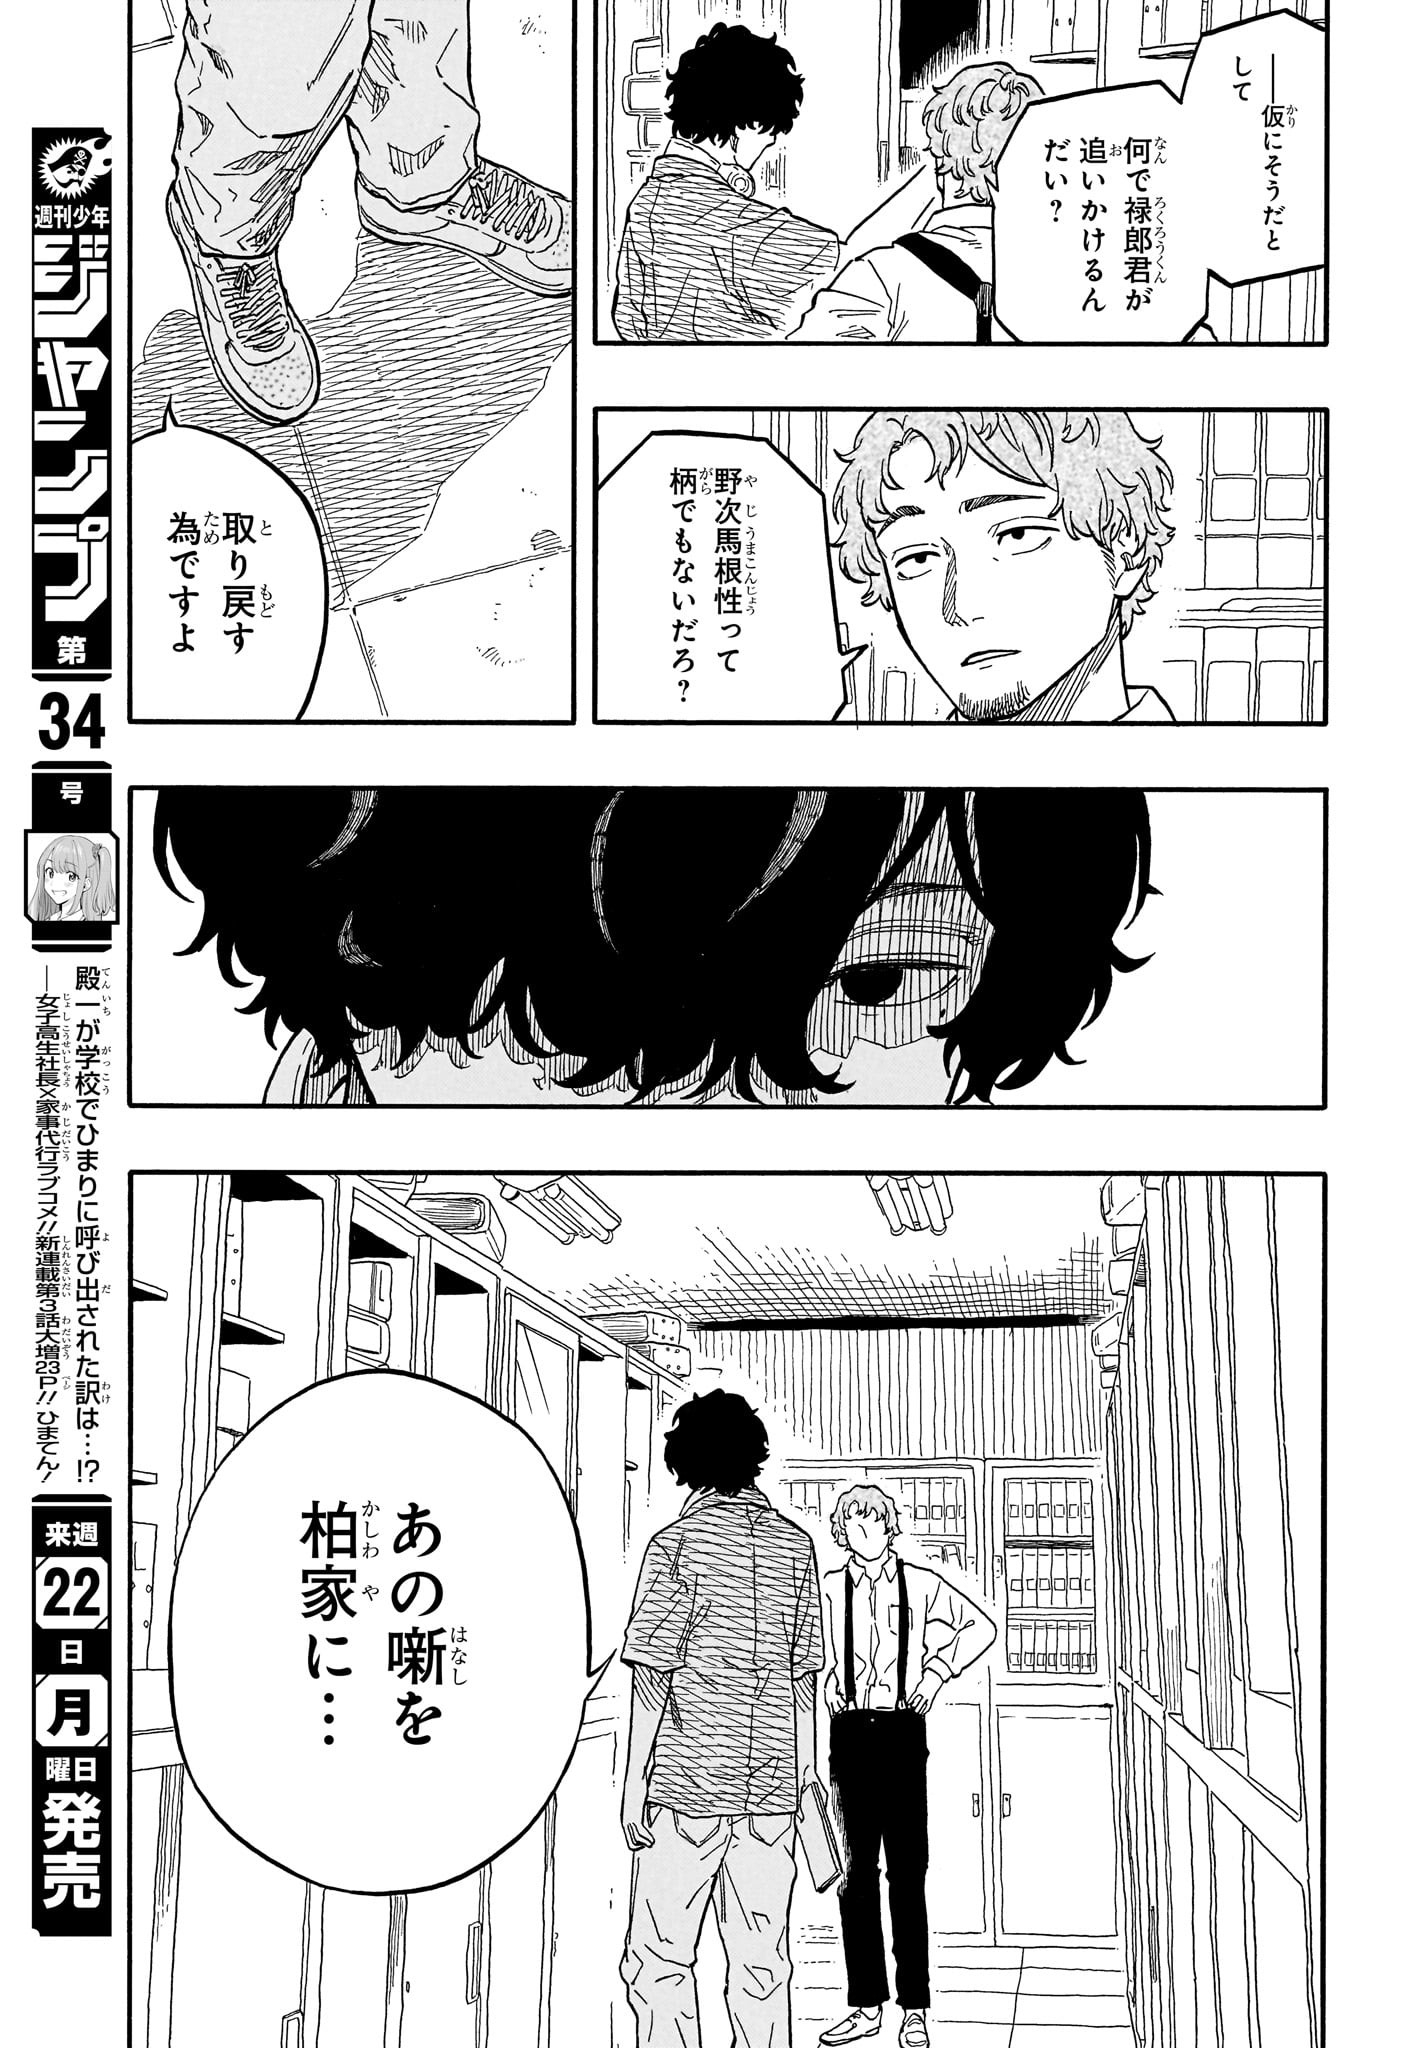 Akane-Banashi - Chapter 118 - Page 7